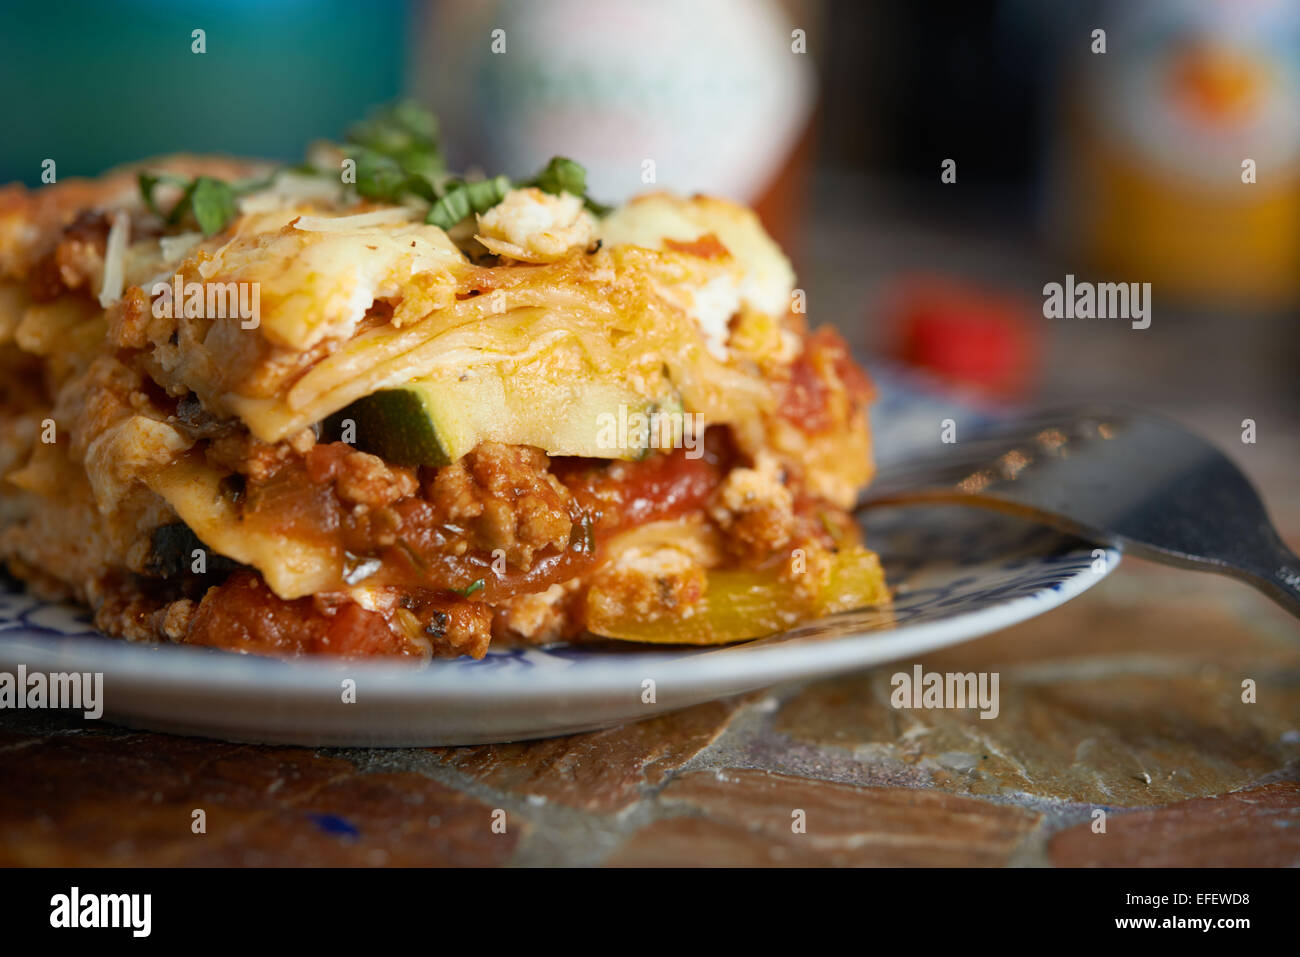 Lasagne seduto su una piastra con una forcella sporgente. Fotografia di cibo. Vista sid Foto Stock